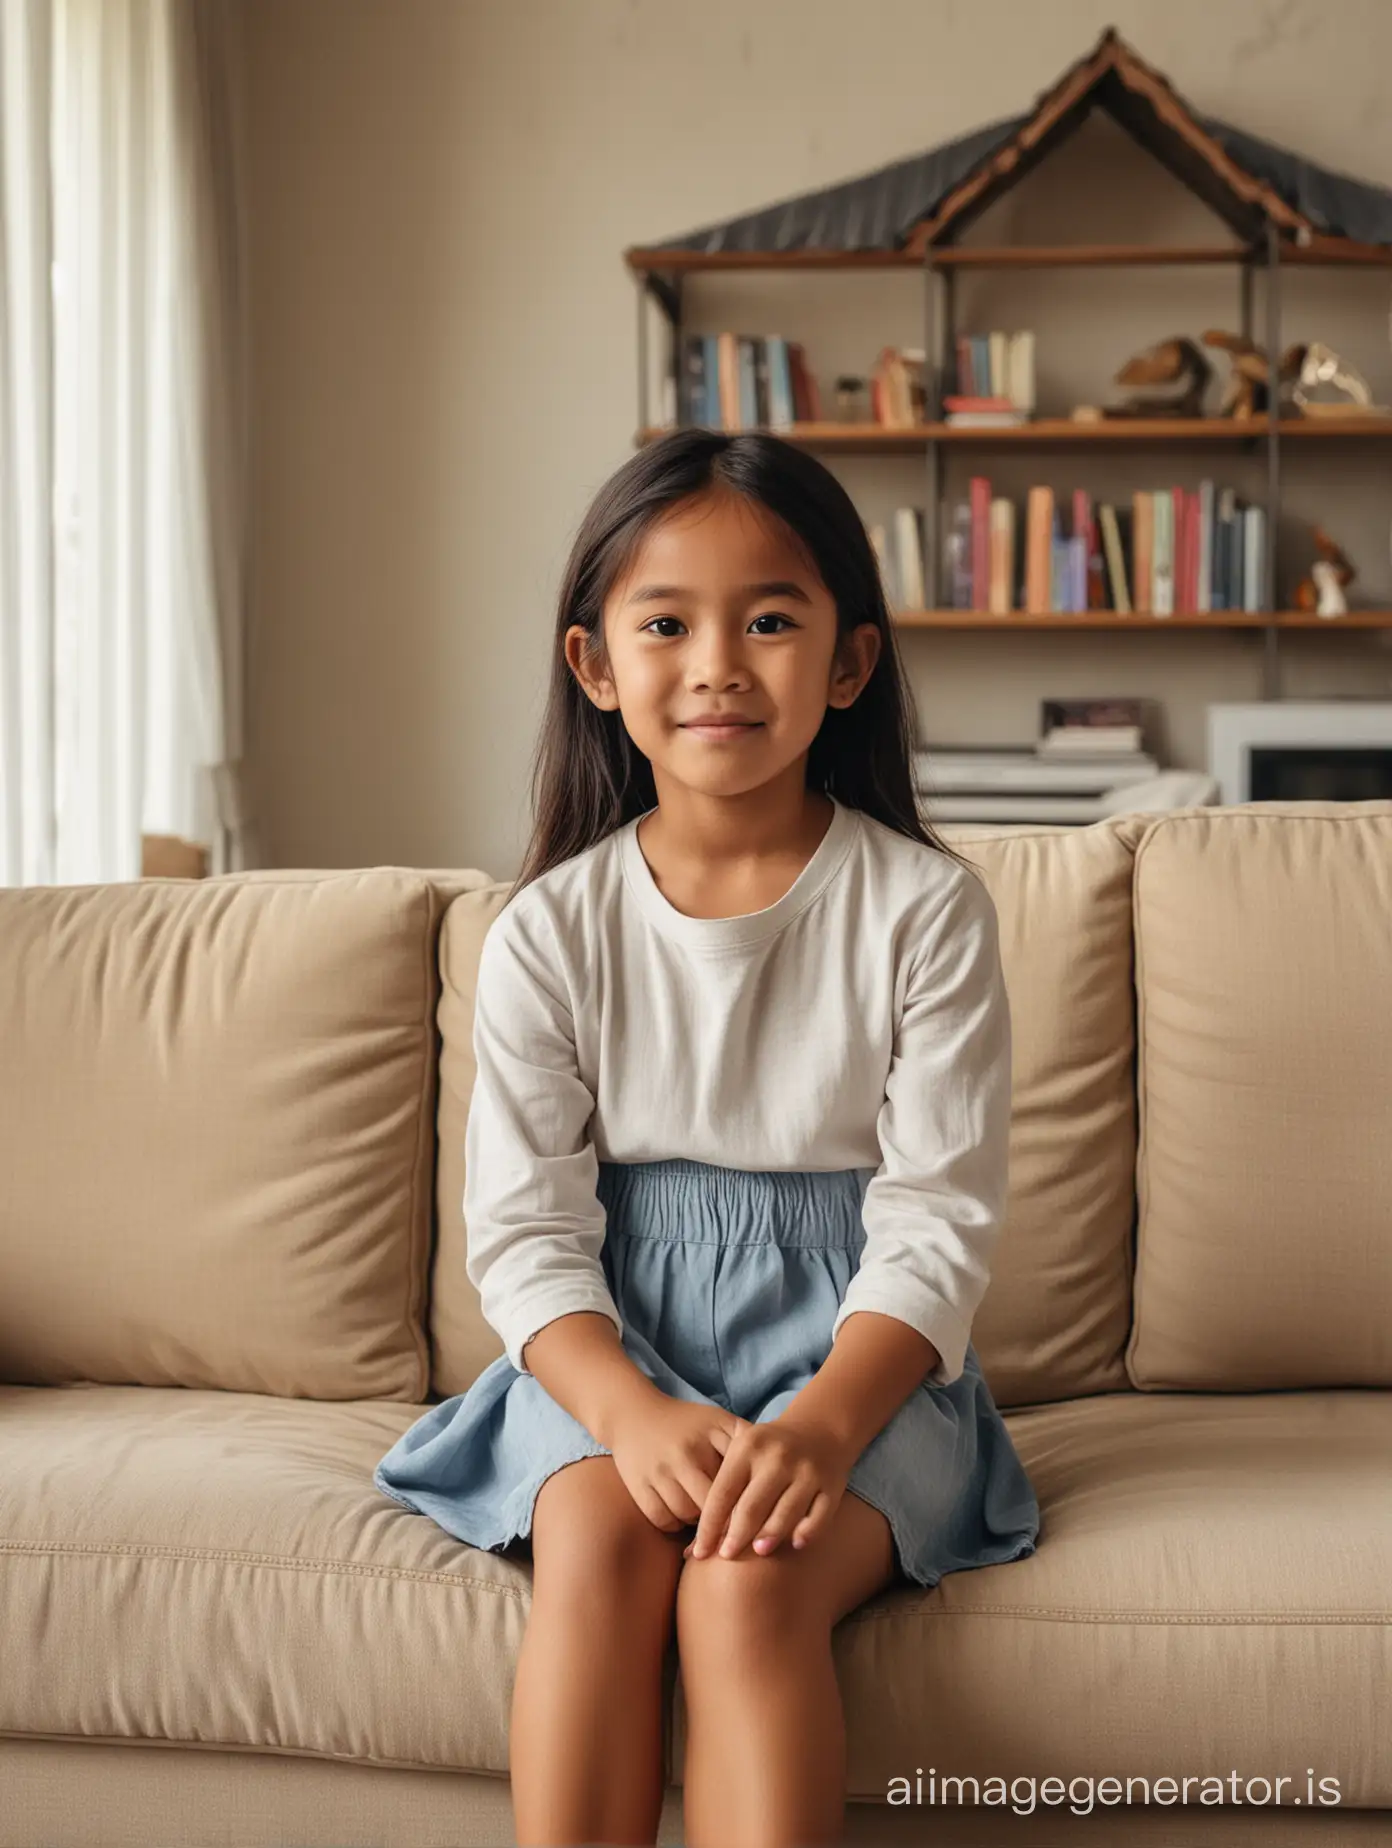 Seorang anak perempuan indonesia berusia 6 tahun pakaian casual duduk di sofa dengan background rumah klasik